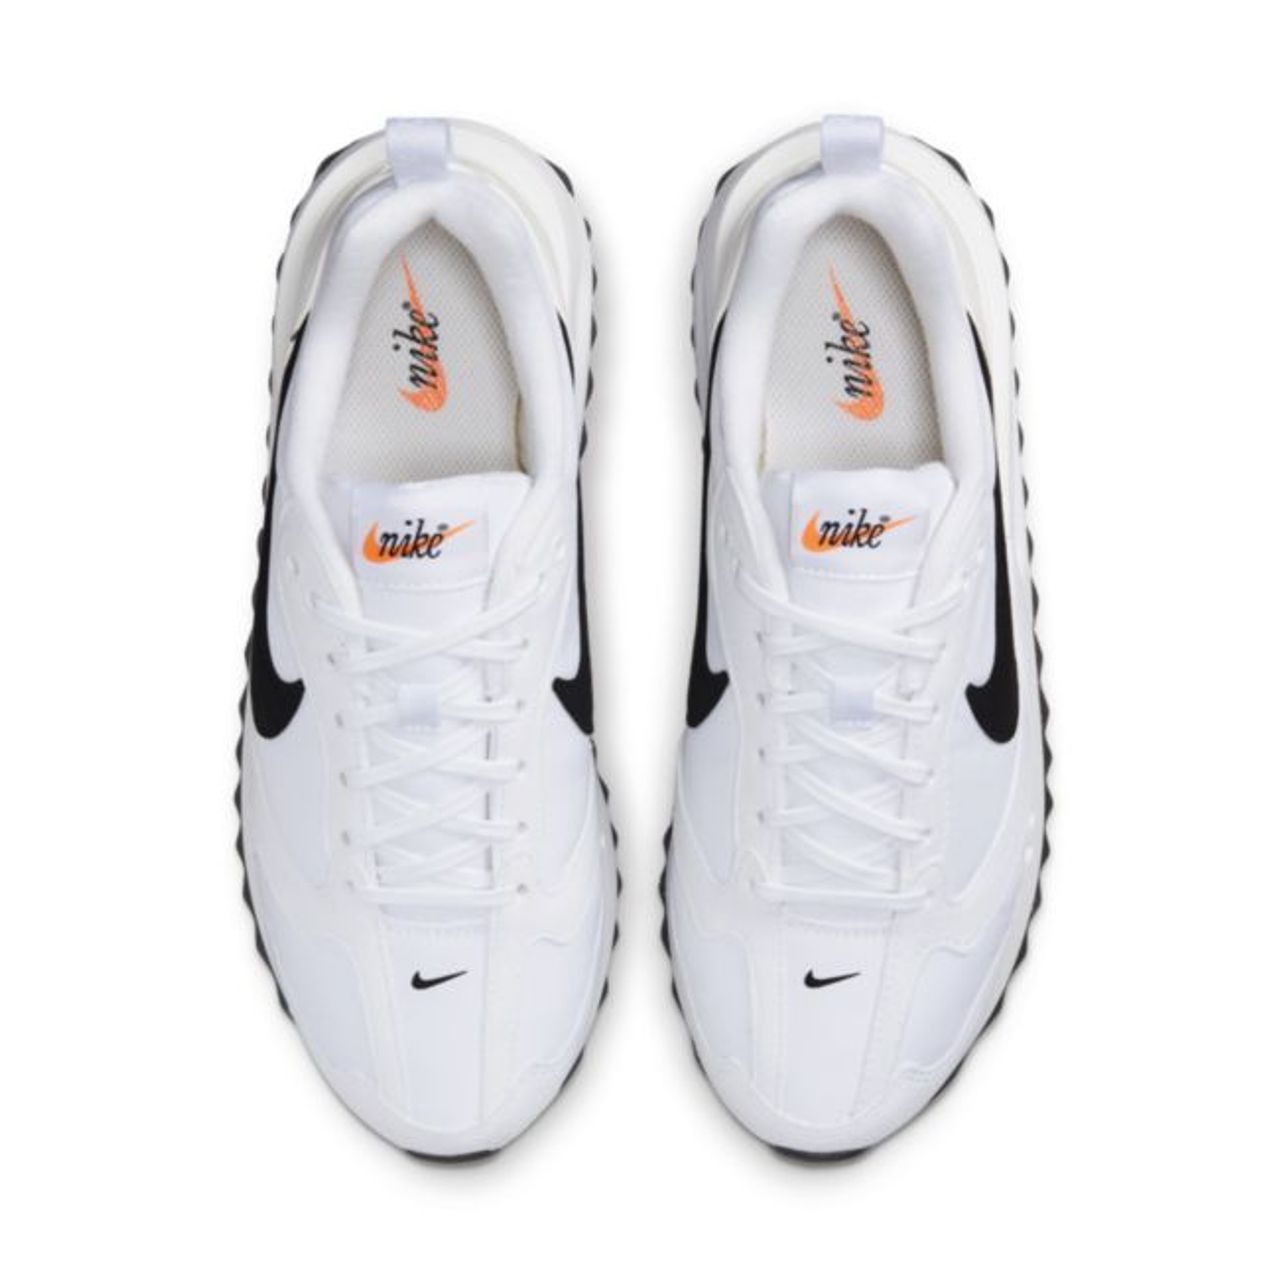 Nike Air Max Dawn Damenschuh - Weiß